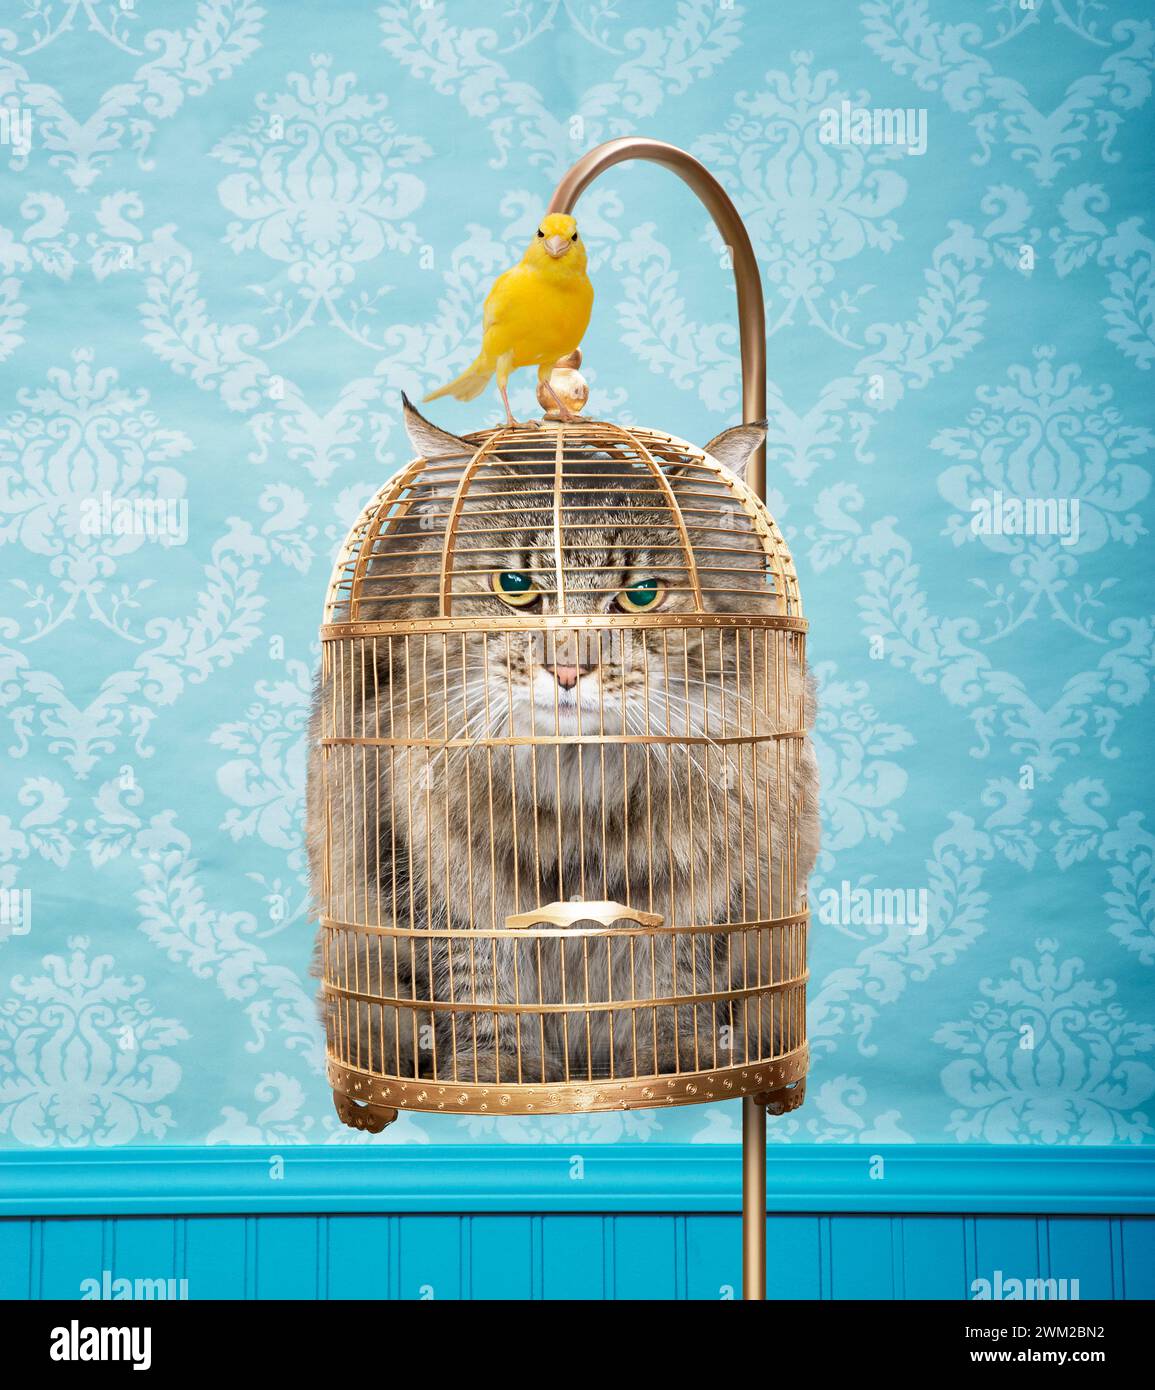 Un chat en colère est empaqueté dans une cage à oiseaux tandis qu'un canari est assis au sommet de la cage dans une image sur le retournement et l'inversion de rôle. Banque D'Images